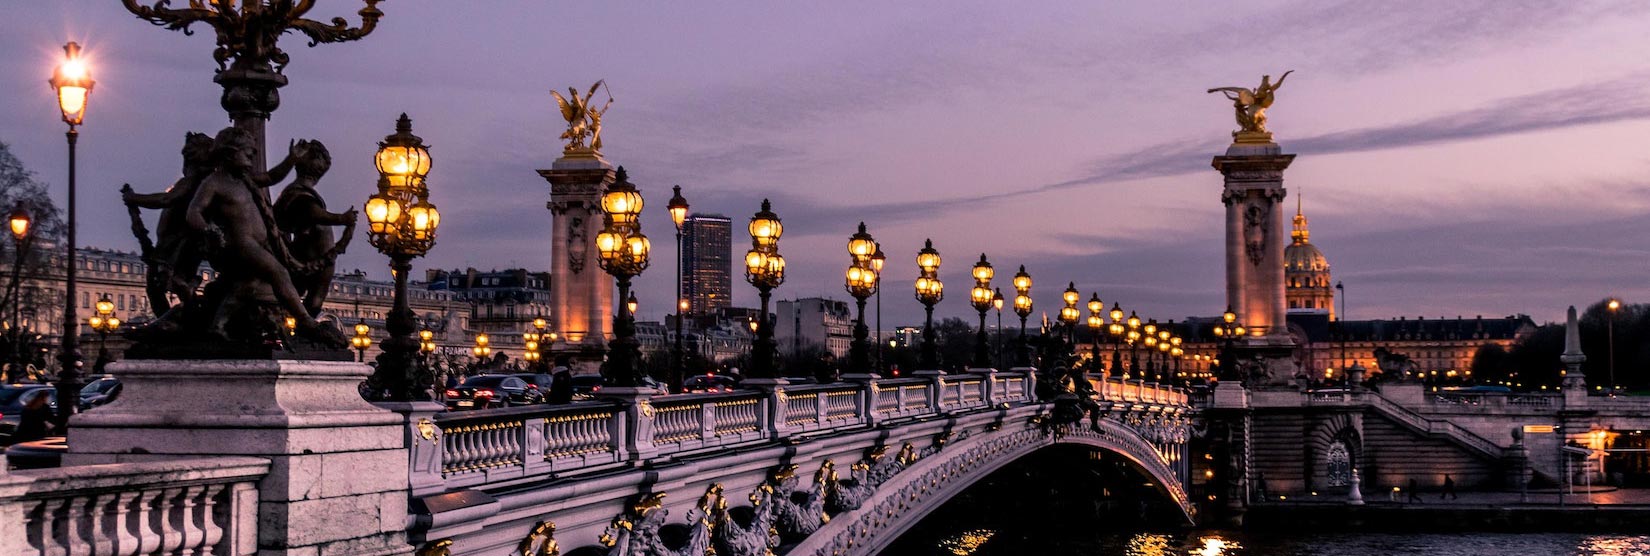 Puente Alexandre III París, Francia